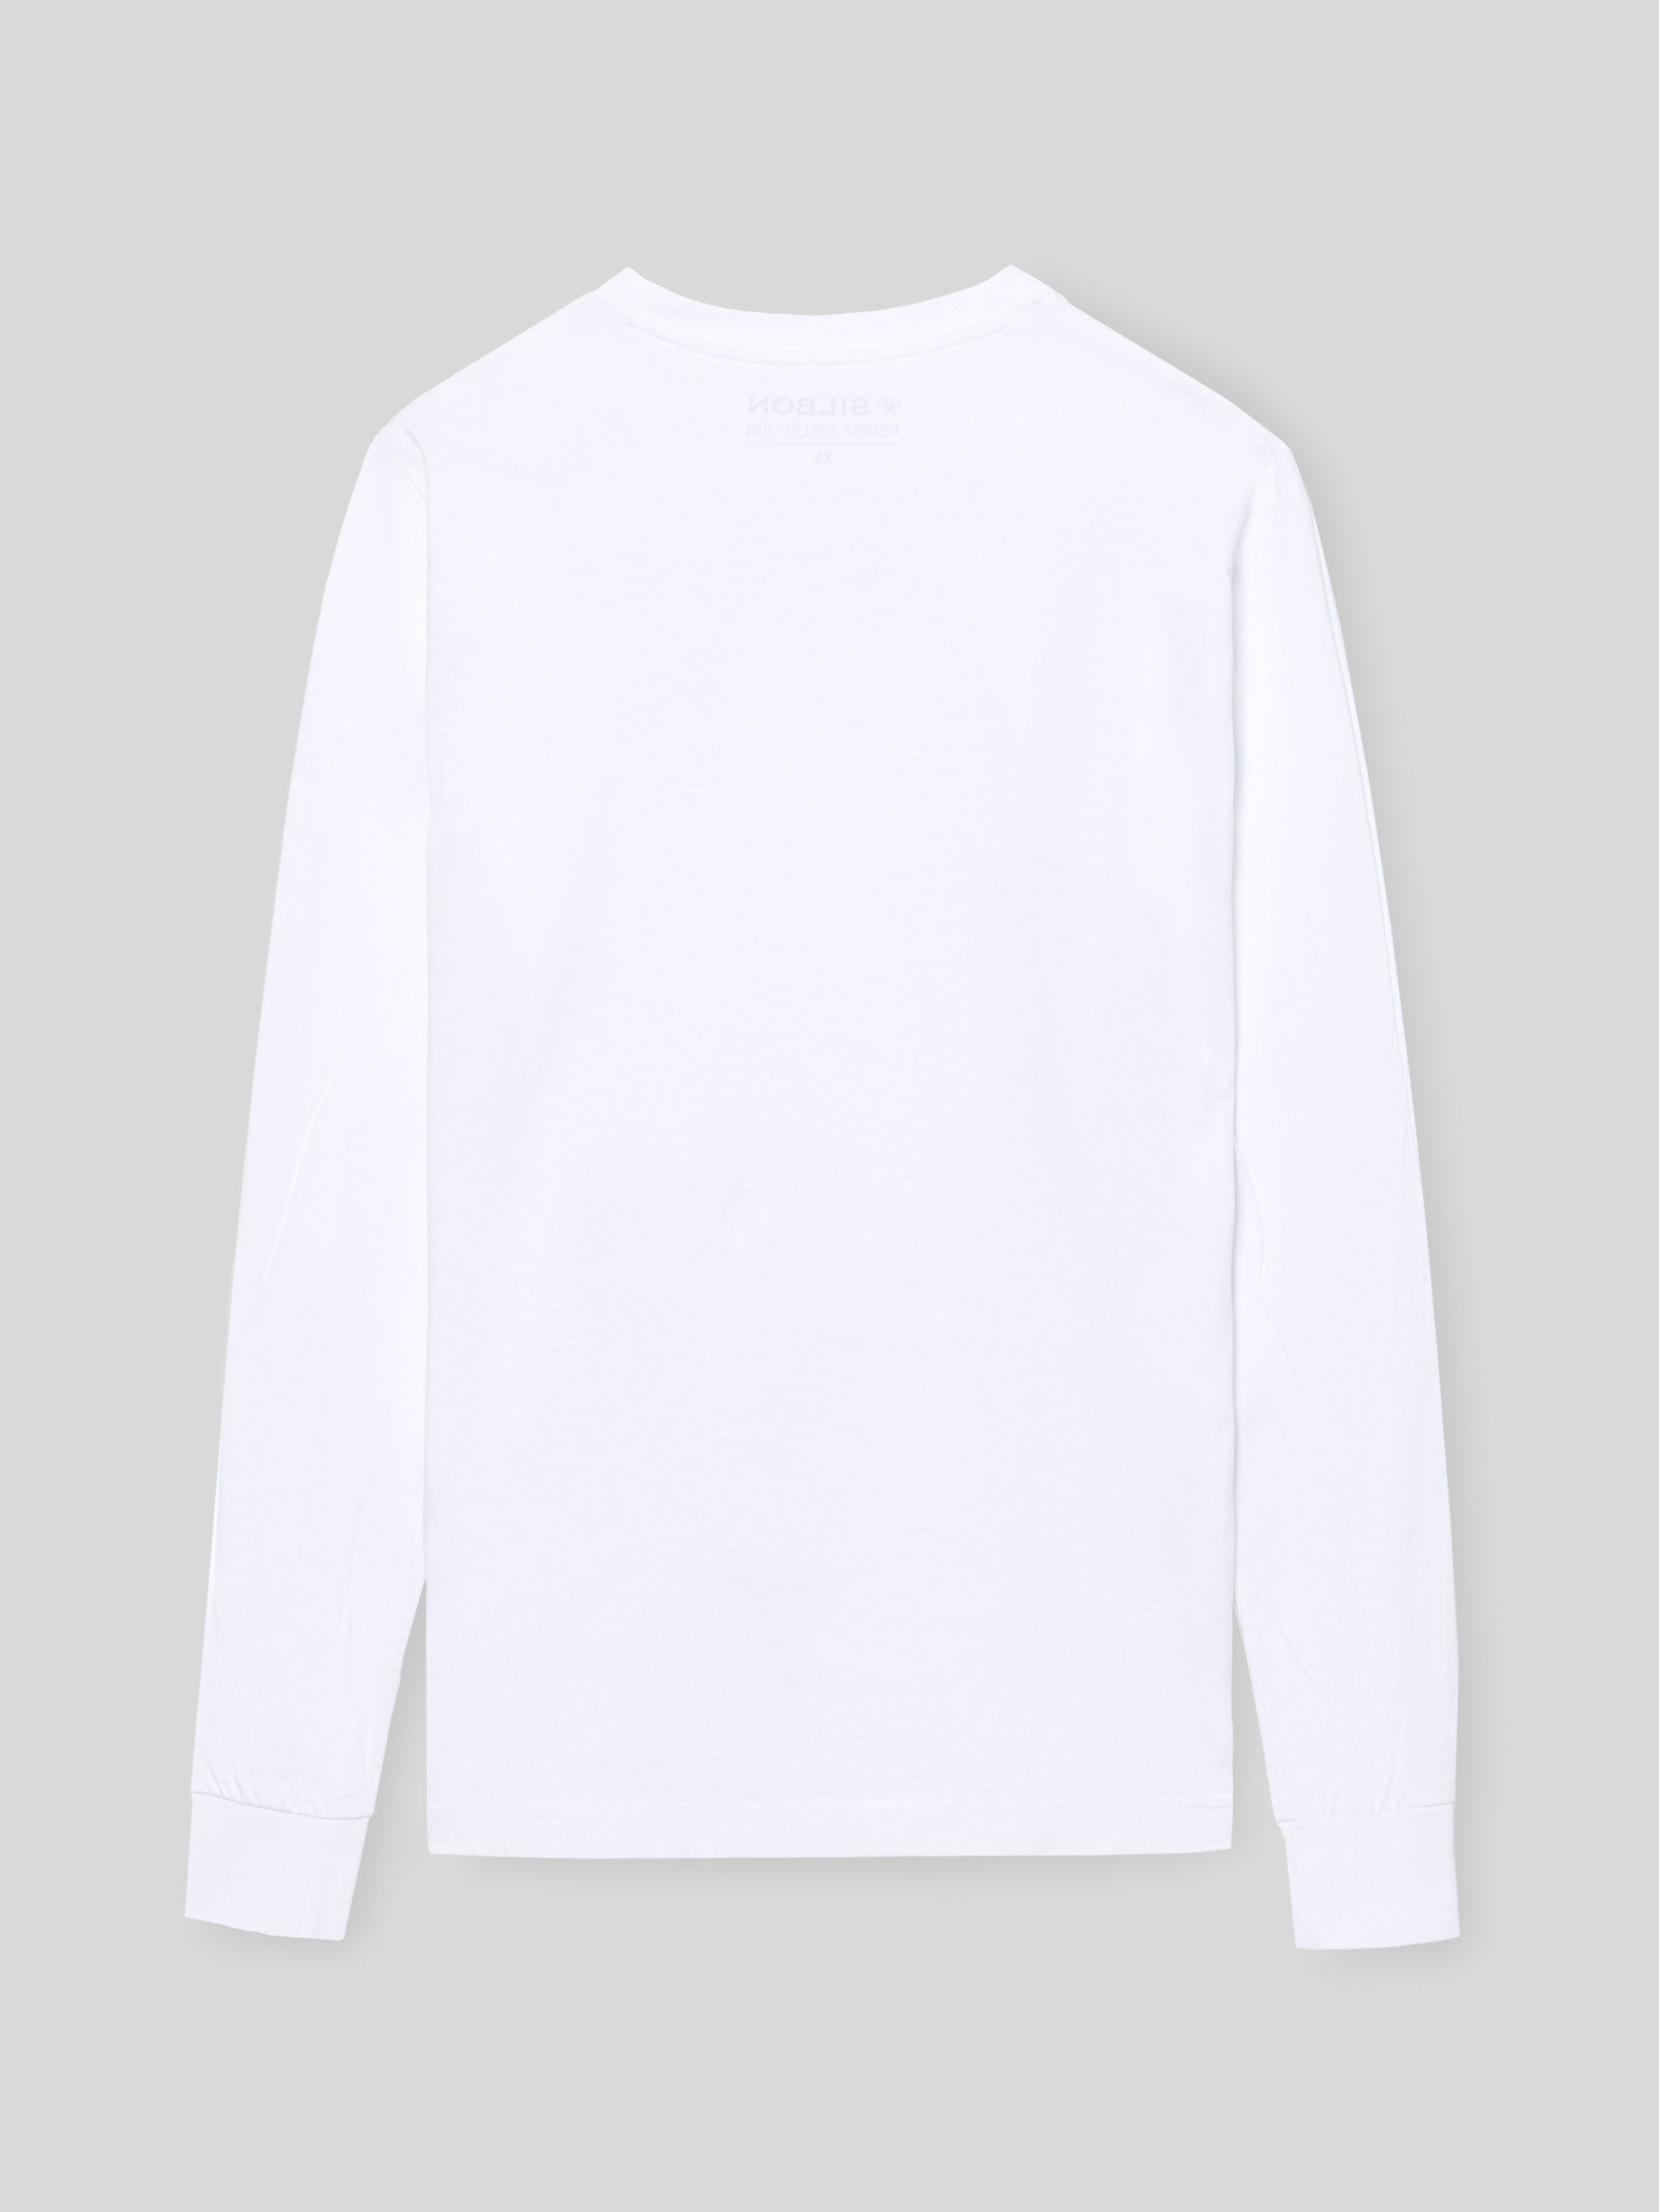 Camiseta manga larga miniraqueta blanca